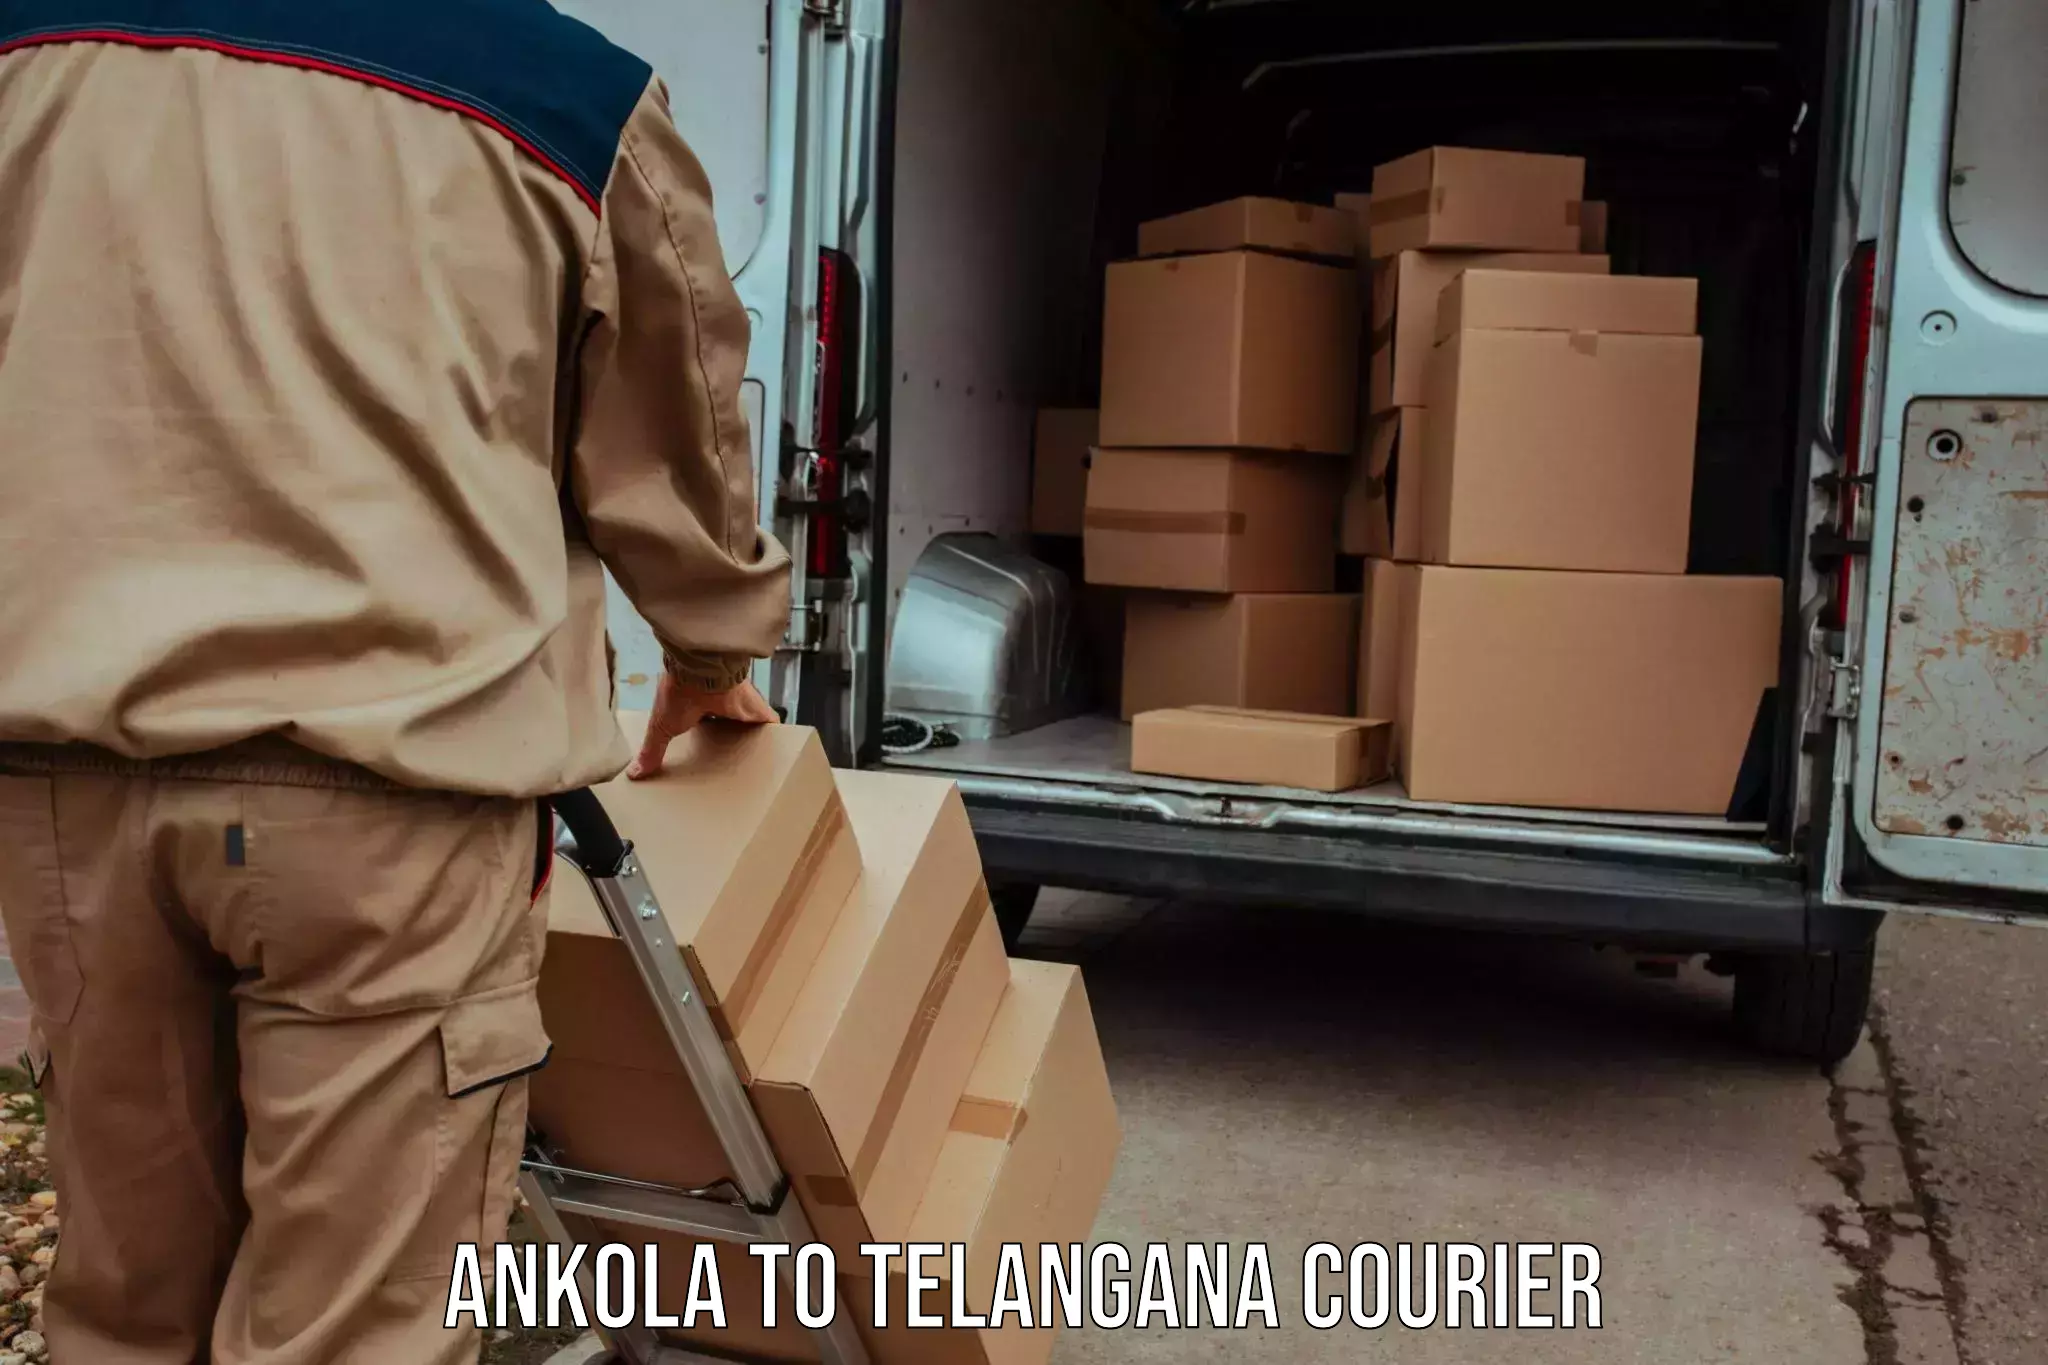 Courier service comparison Ankola to Sikanderguda